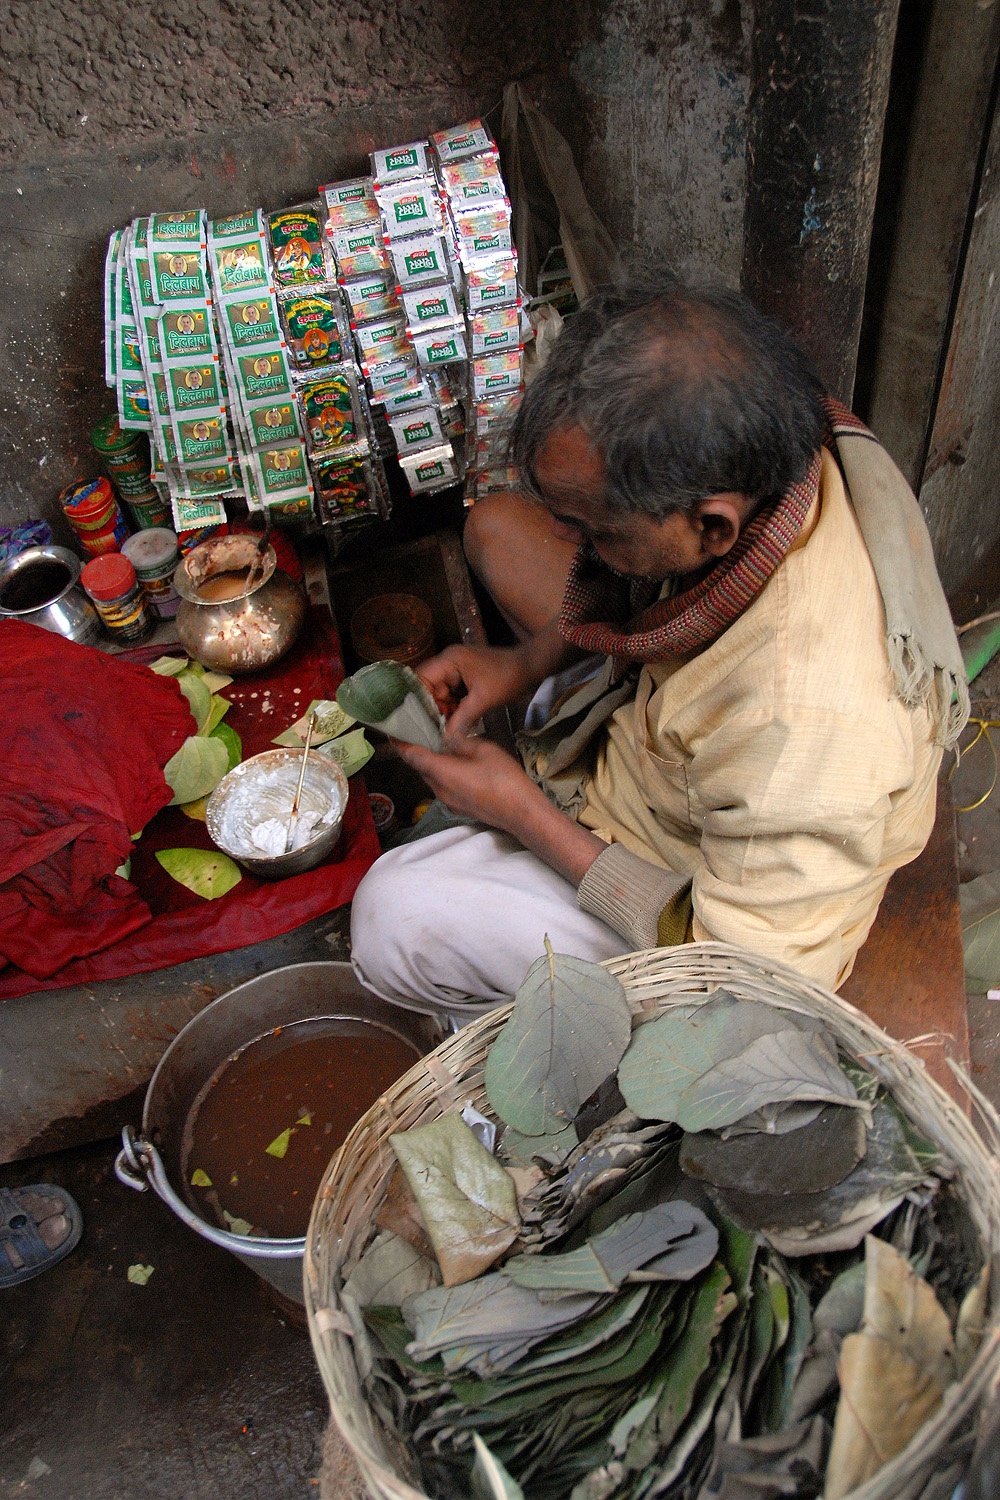 bill-hocker-paan-(prepared-betel-nut)-vendor-new-delhi-india-2006